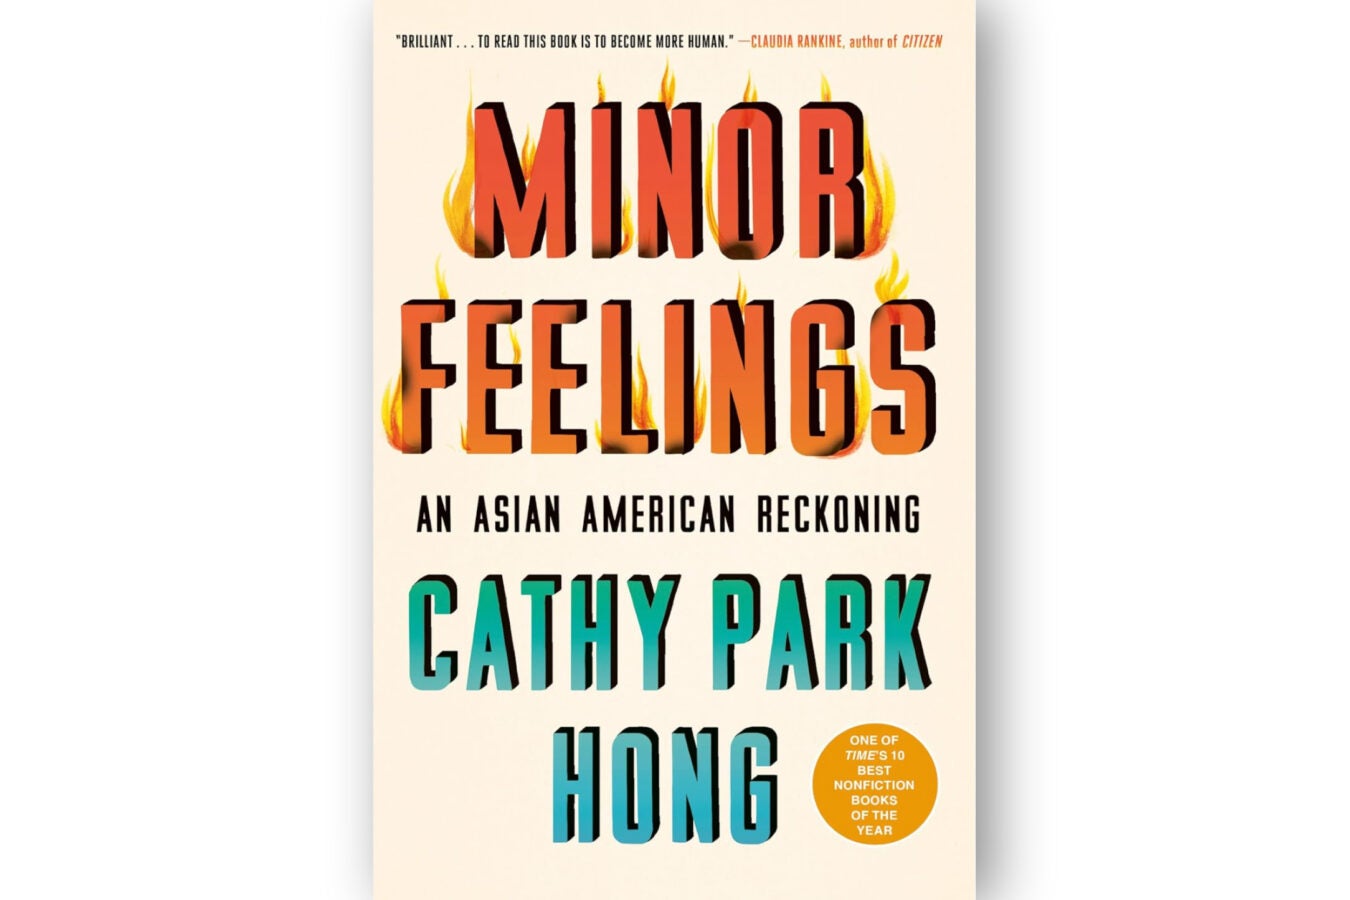 Kitap kapağı: "Küçük Duygular" Cathy Park Hong'un yazısı.